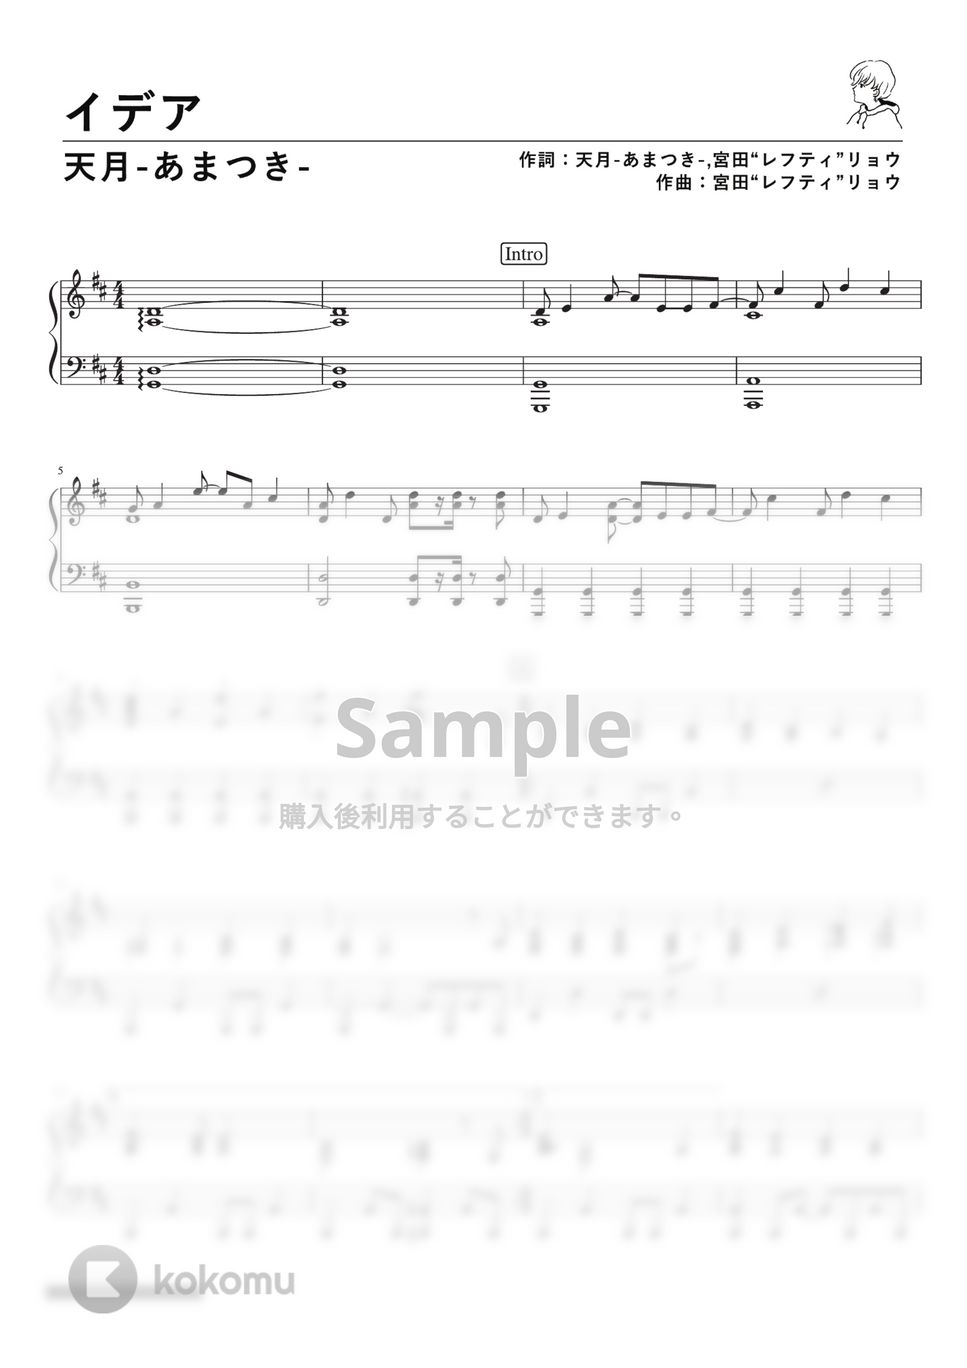 天月 -あまつき- - イデア (PianoSolo) by 深根 / Fukane